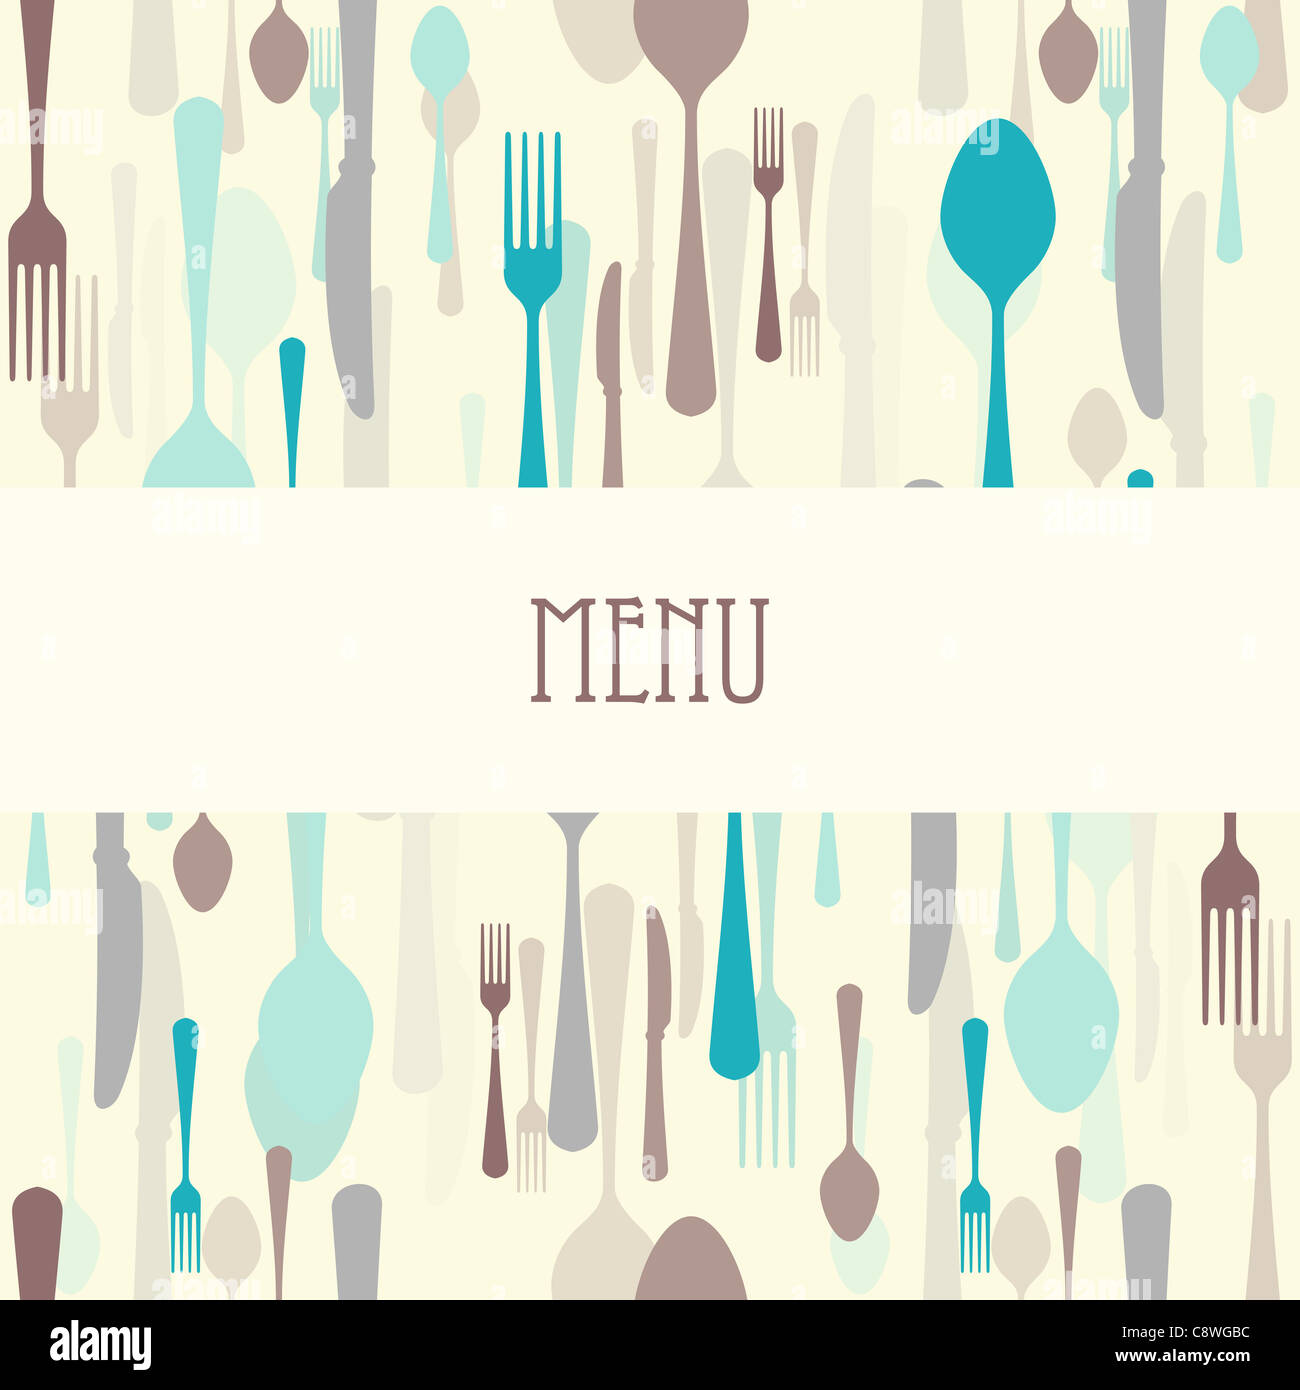 Restaurant-Menü - Abendessen Menü mit Besteck wie Messer, Gabel oder Löffel essen Stockfoto